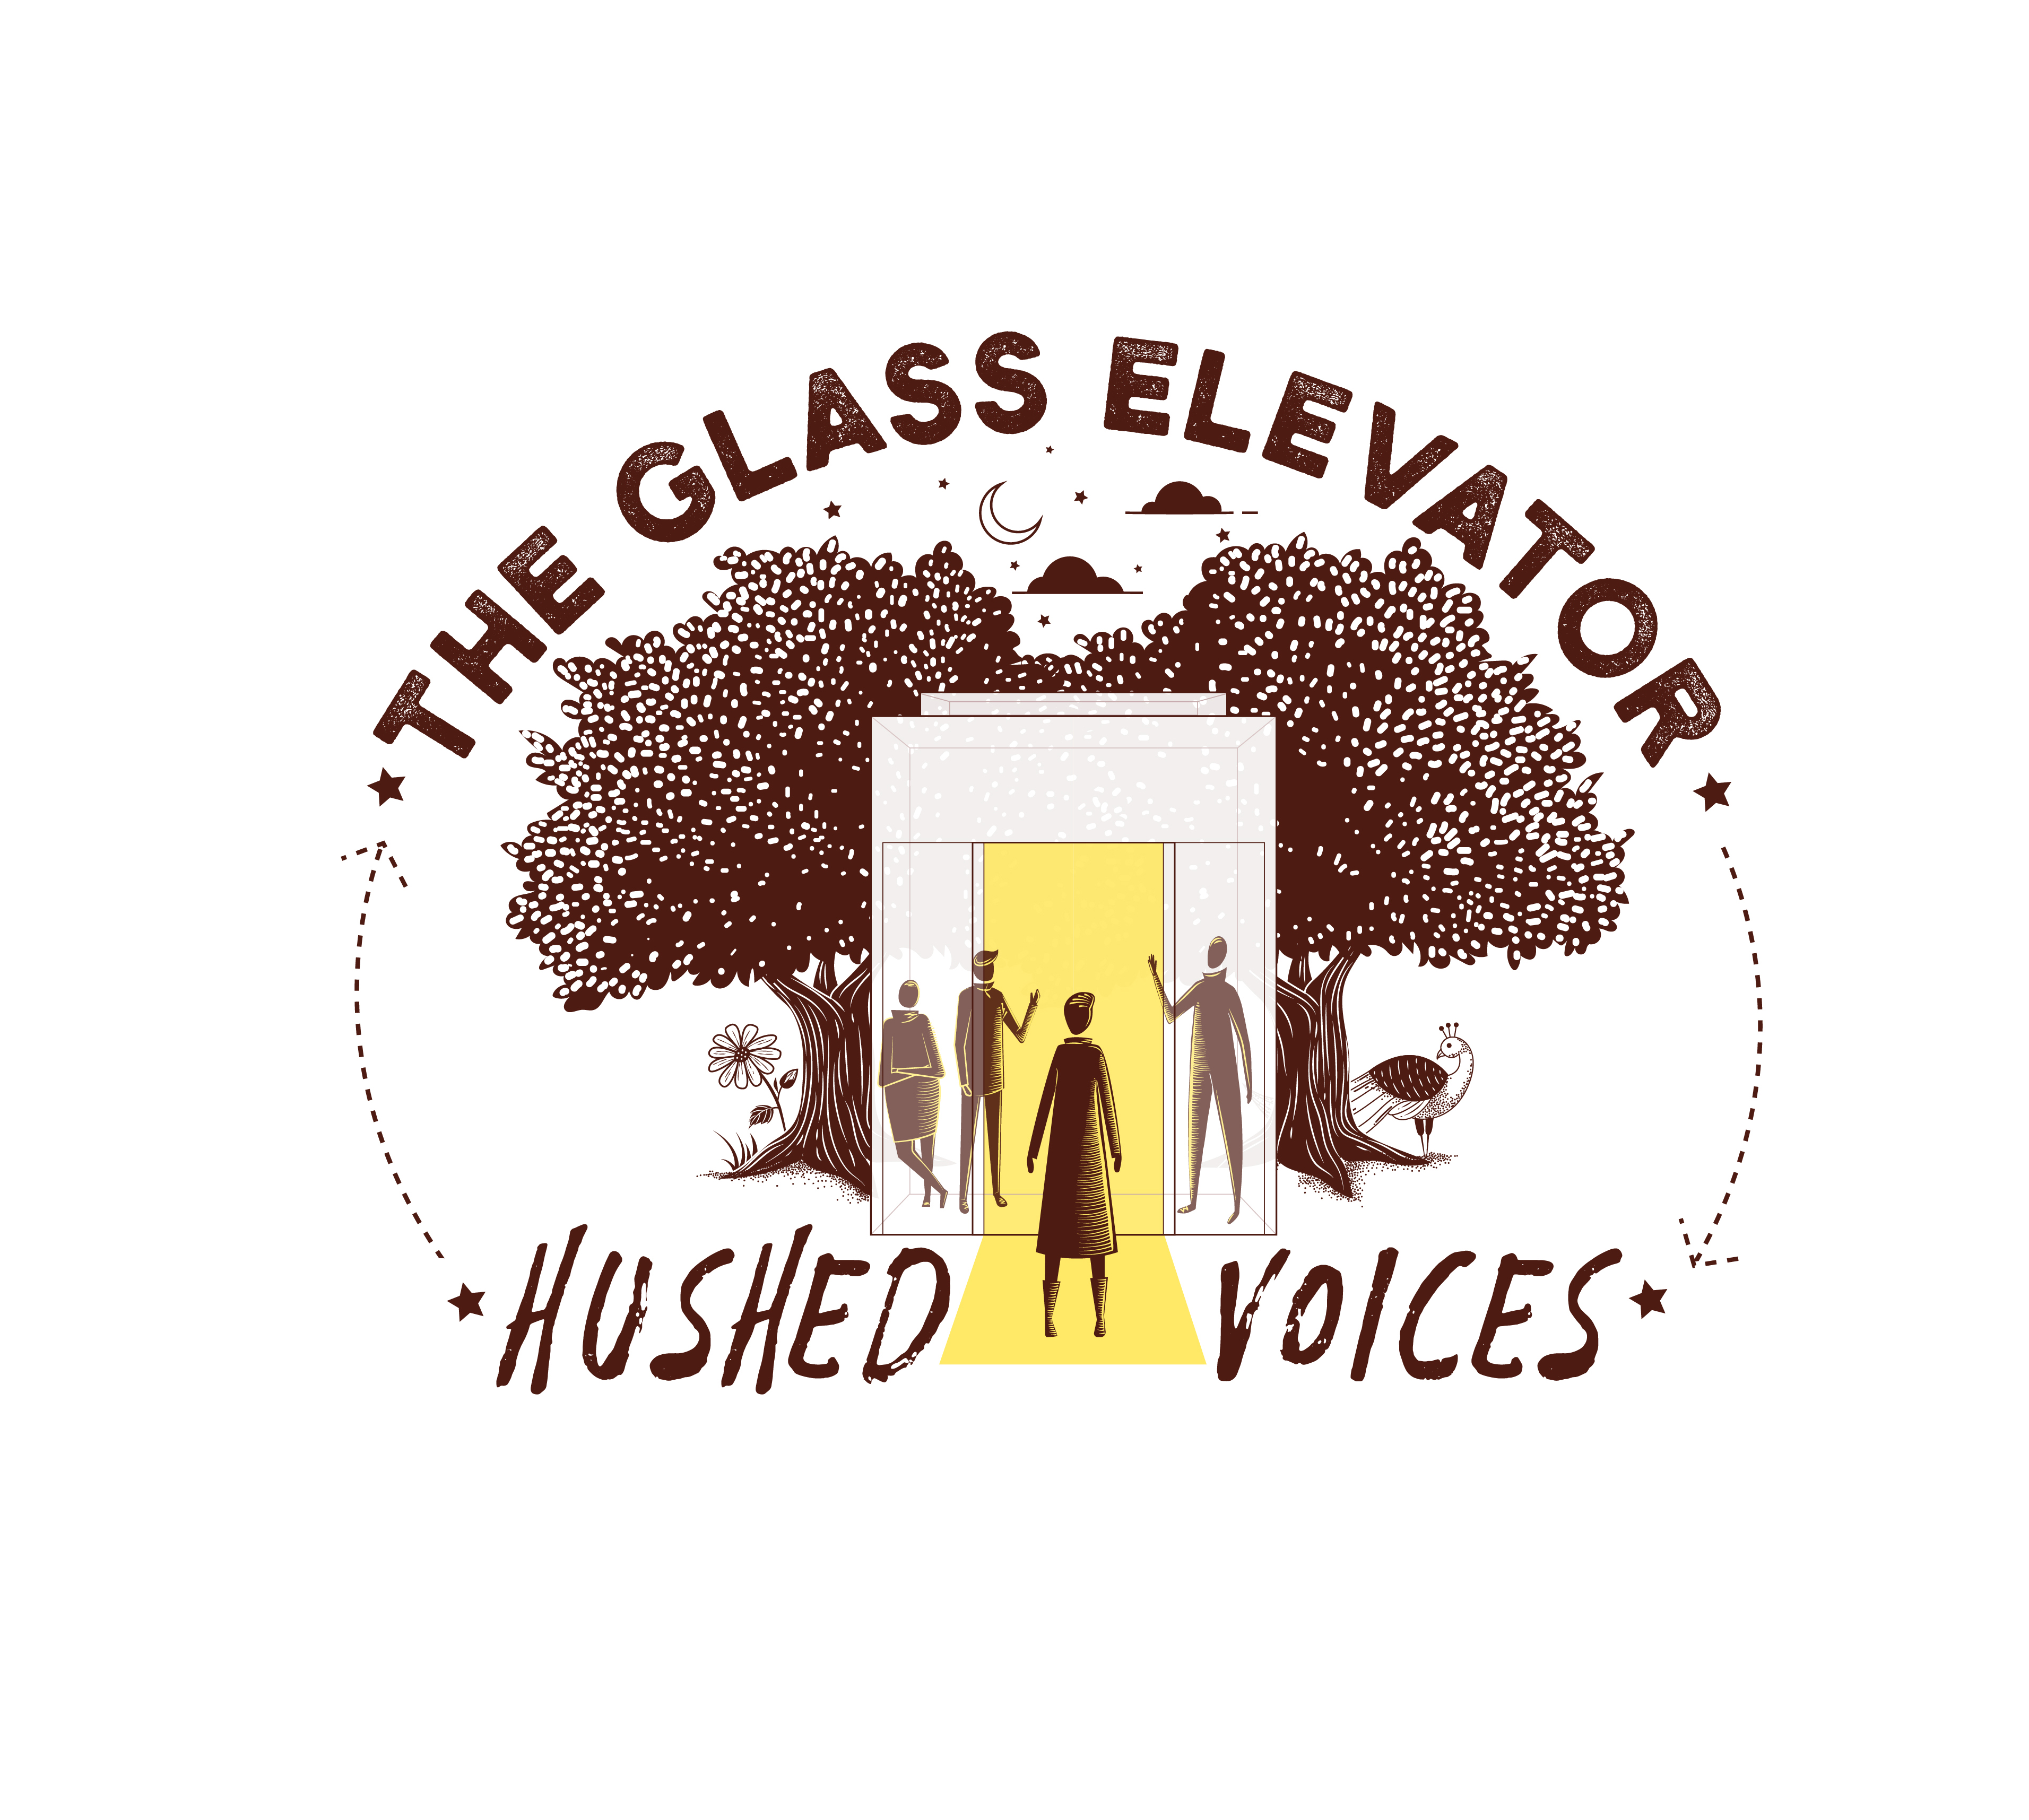 THE GLASS ELEVATOR